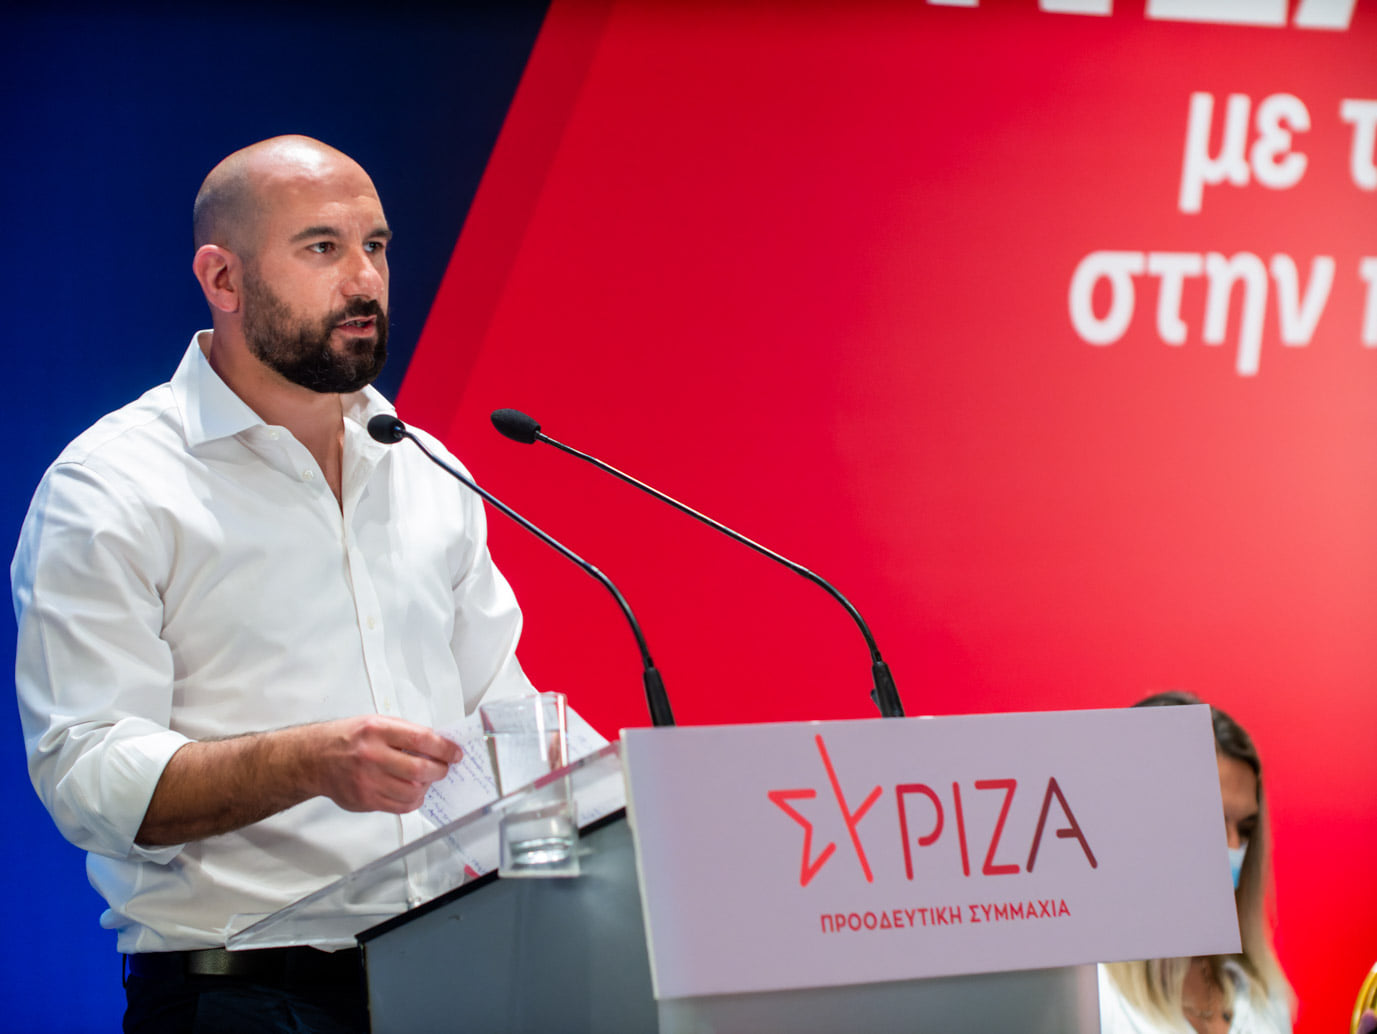 Δ. Τζανακόπουλος: Ο κύριος Ντογιάκος λειτουργεί ως εγκάθετος του Κυριάκου Μητσοτάκη